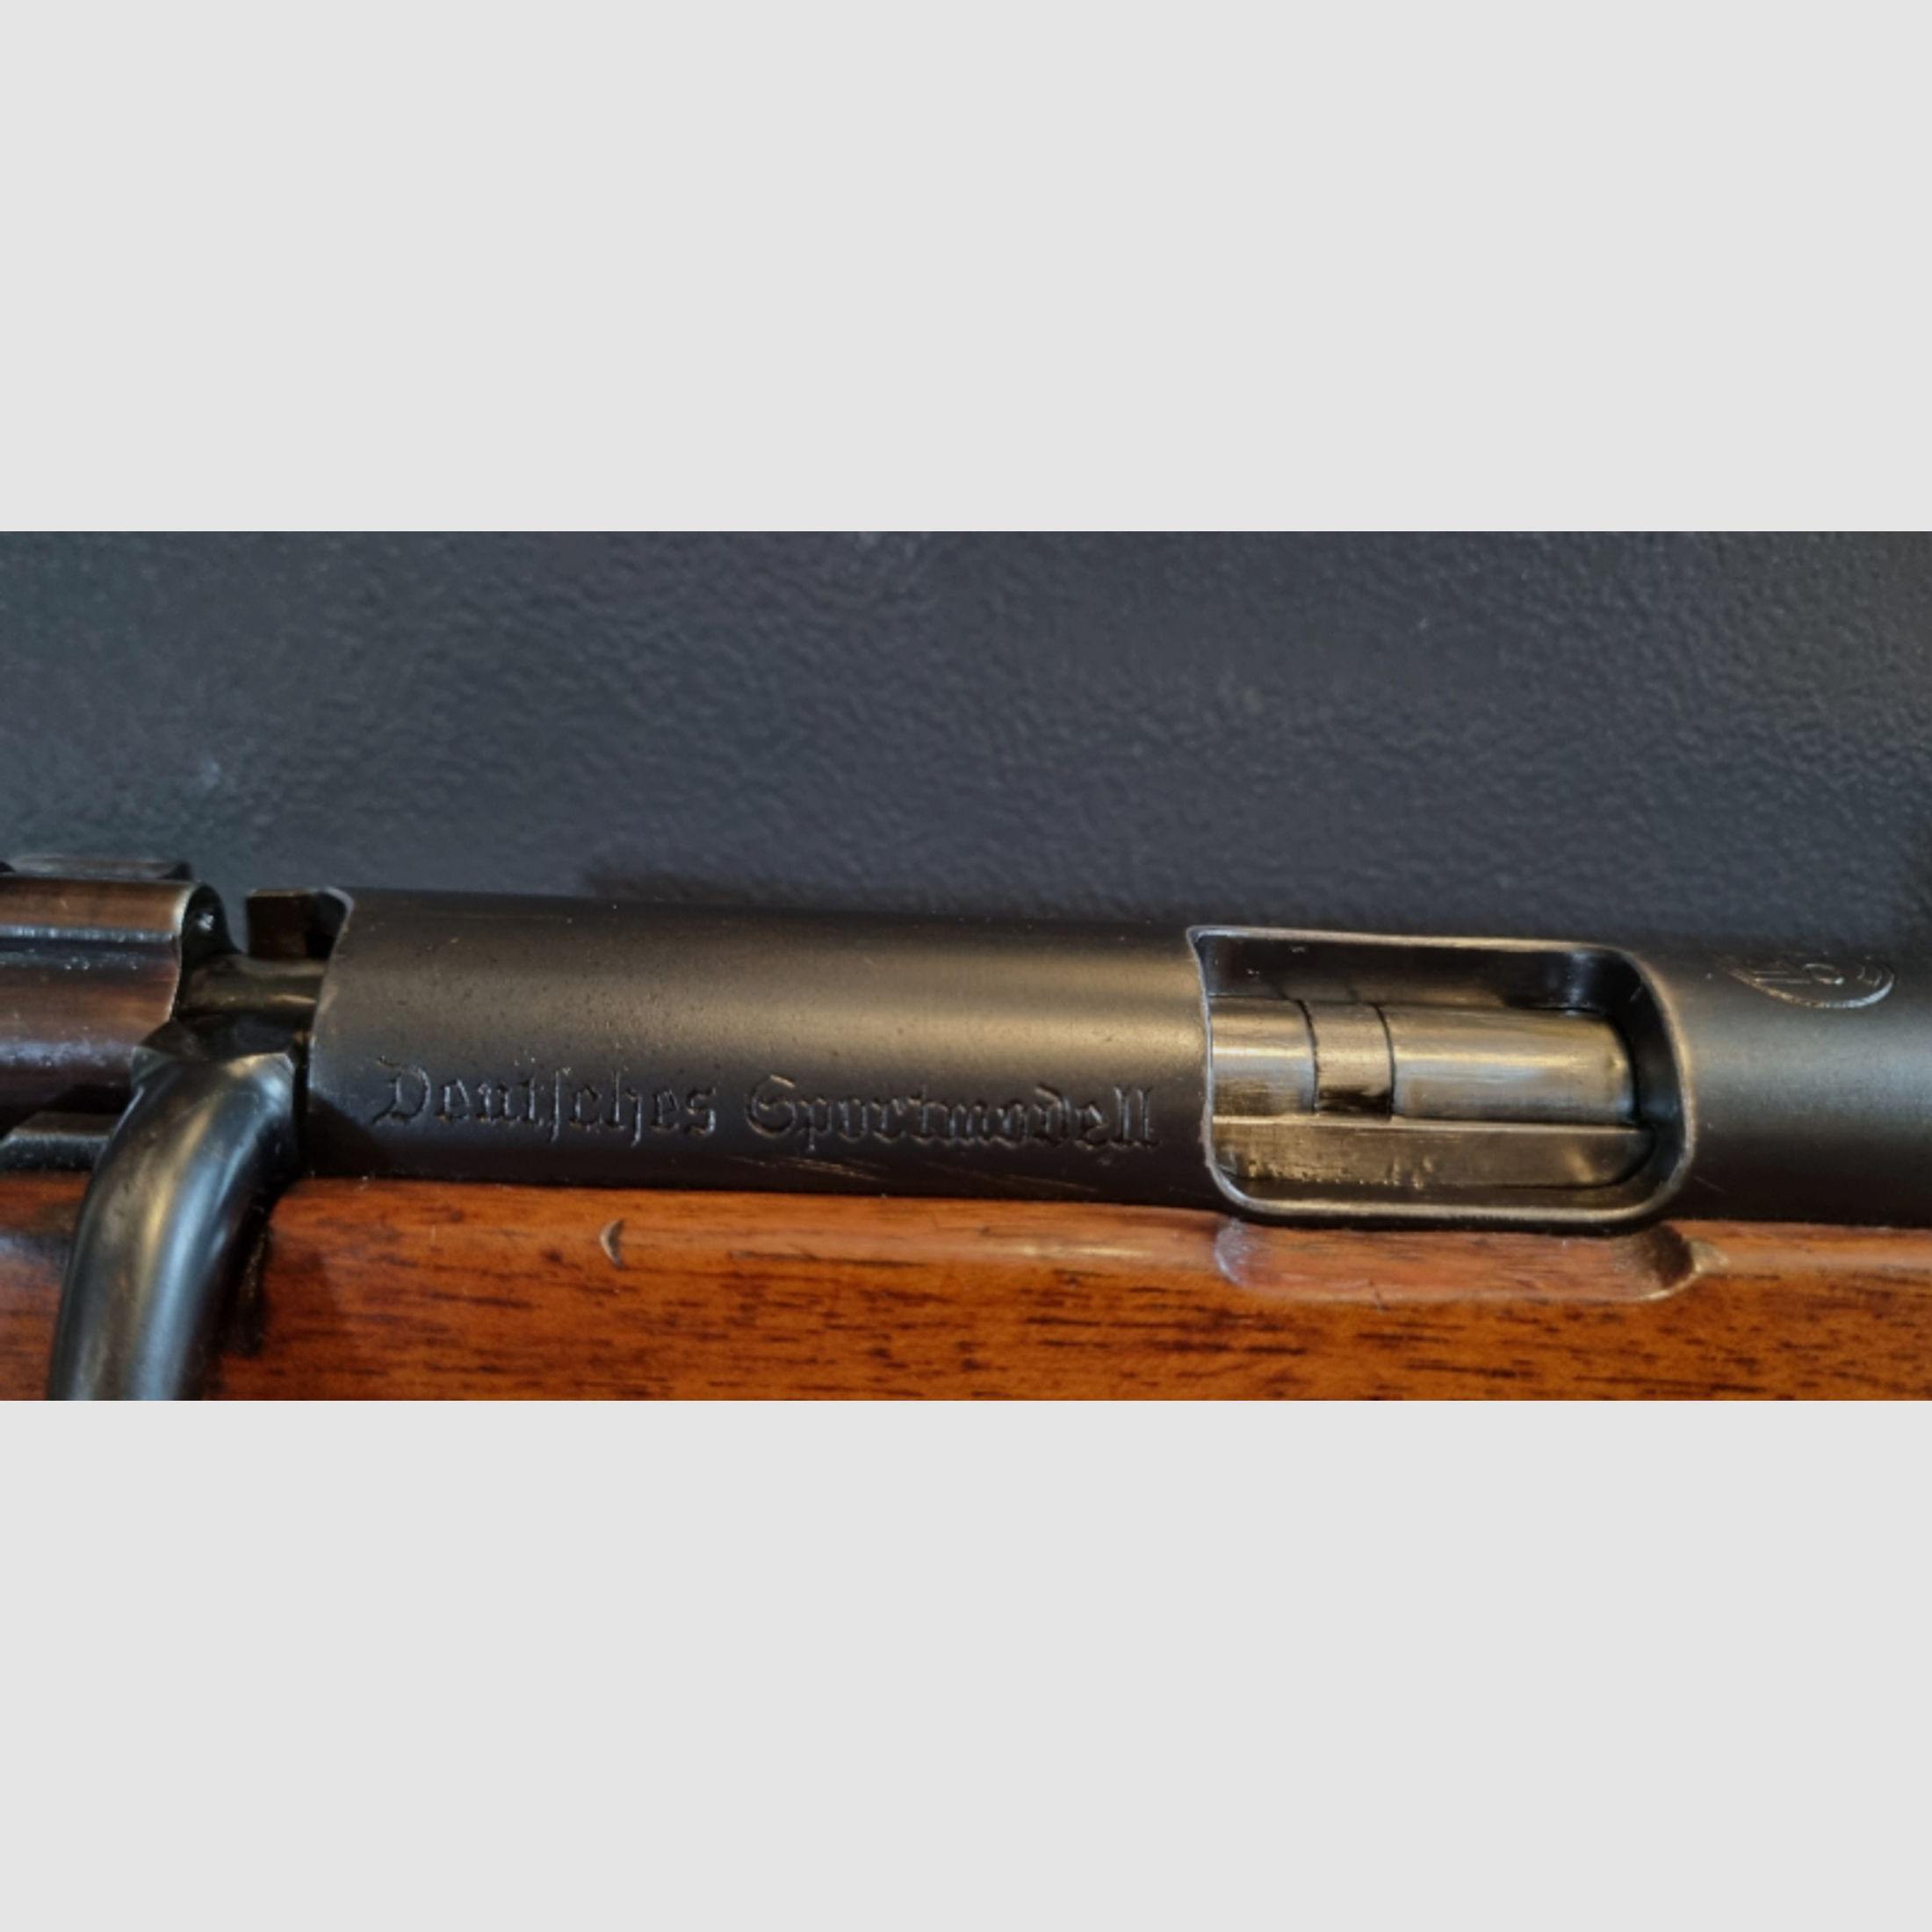 Wehrsportkarabiner Mauser 98 .22lr Deutsches Sportmodell Rarität Gustav Genschow sehr guter Zustand